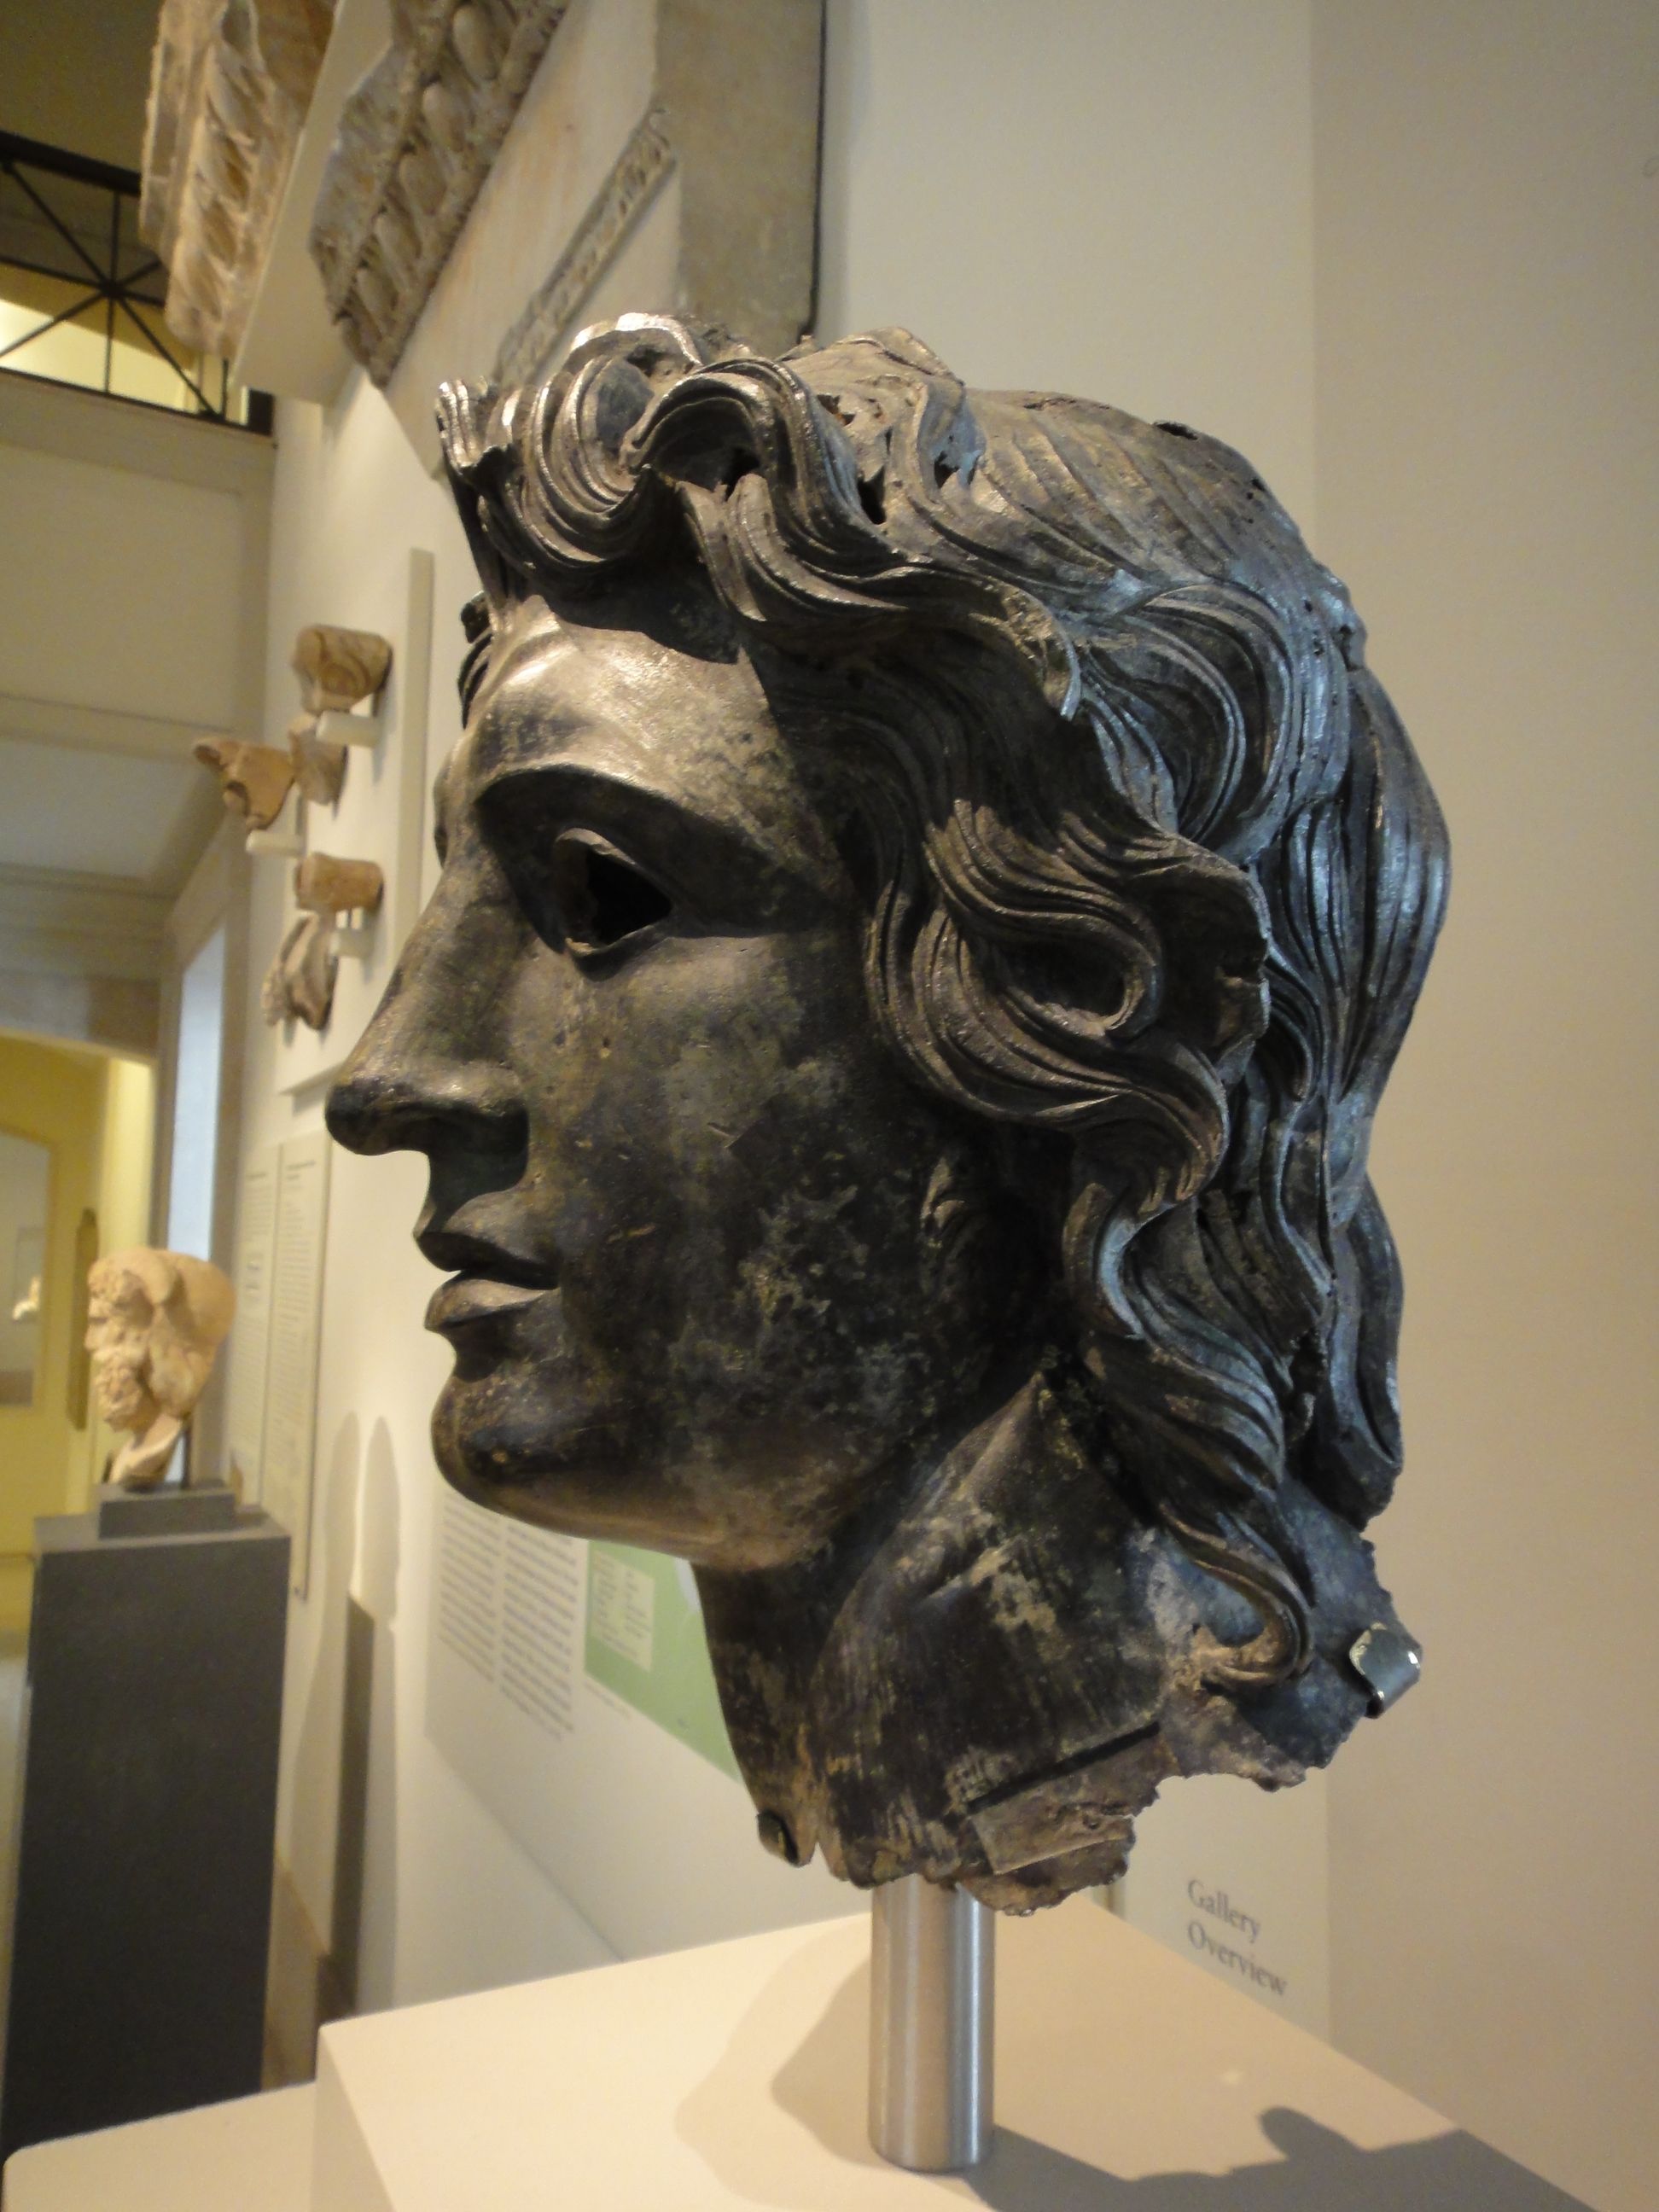 classical period greek sculpture